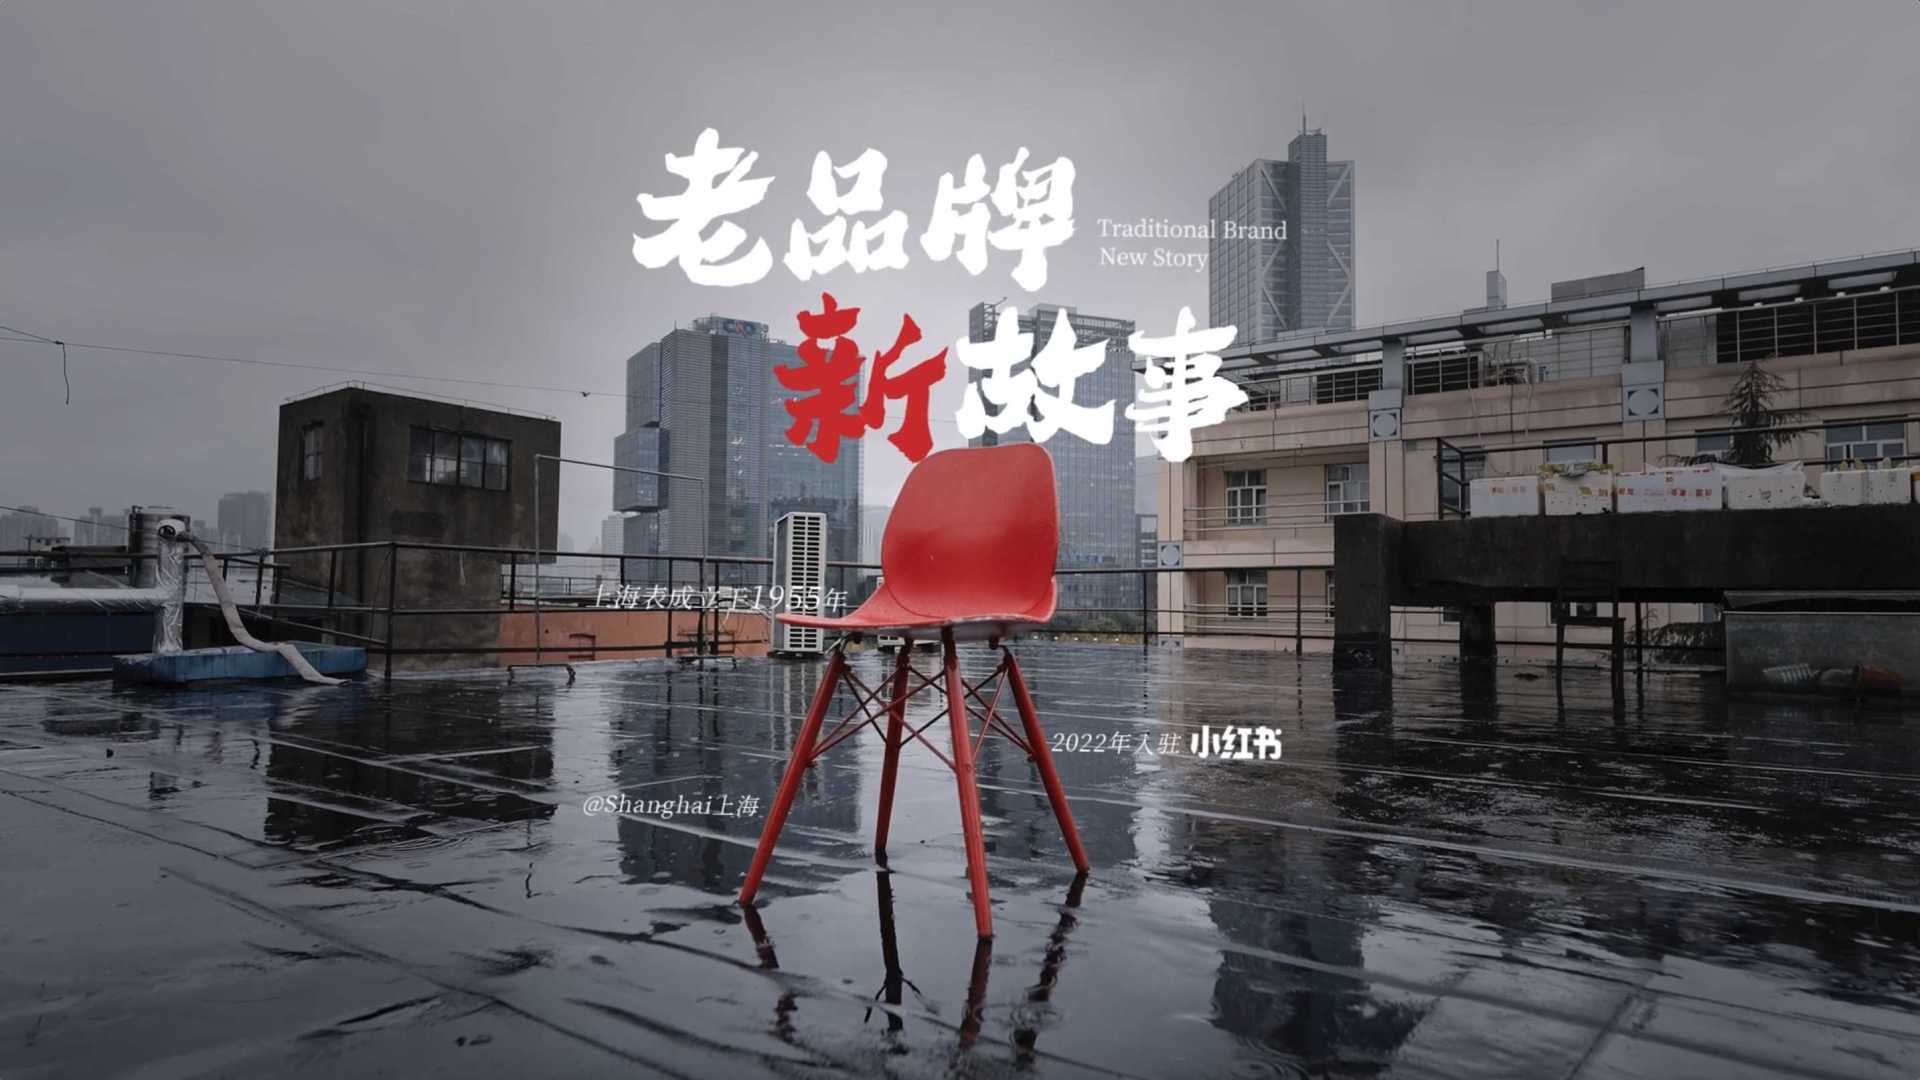 老牌新人 | 小红书x上海表 老品牌 新故事